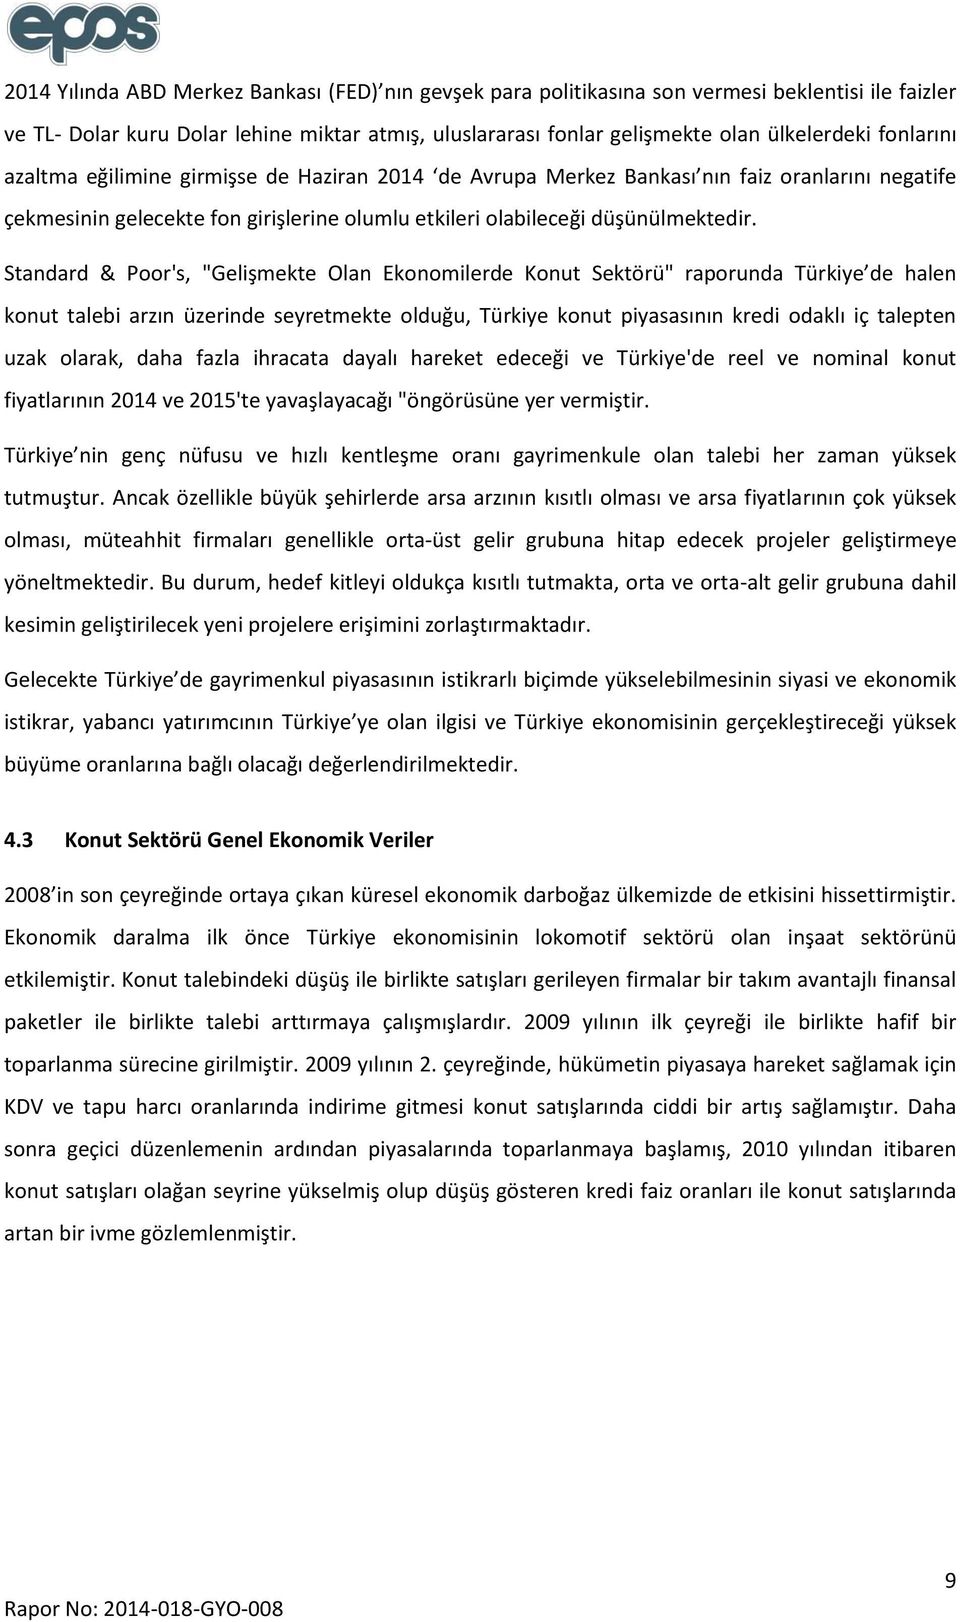 Standard & Poor's, "Gelişmekte Olan Ekonomilerde Konut Sektörü" raporunda Türkiye de halen konut talebi arzın üzerinde seyretmekte olduğu, Türkiye konut piyasasının kredi odaklı iç talepten uzak